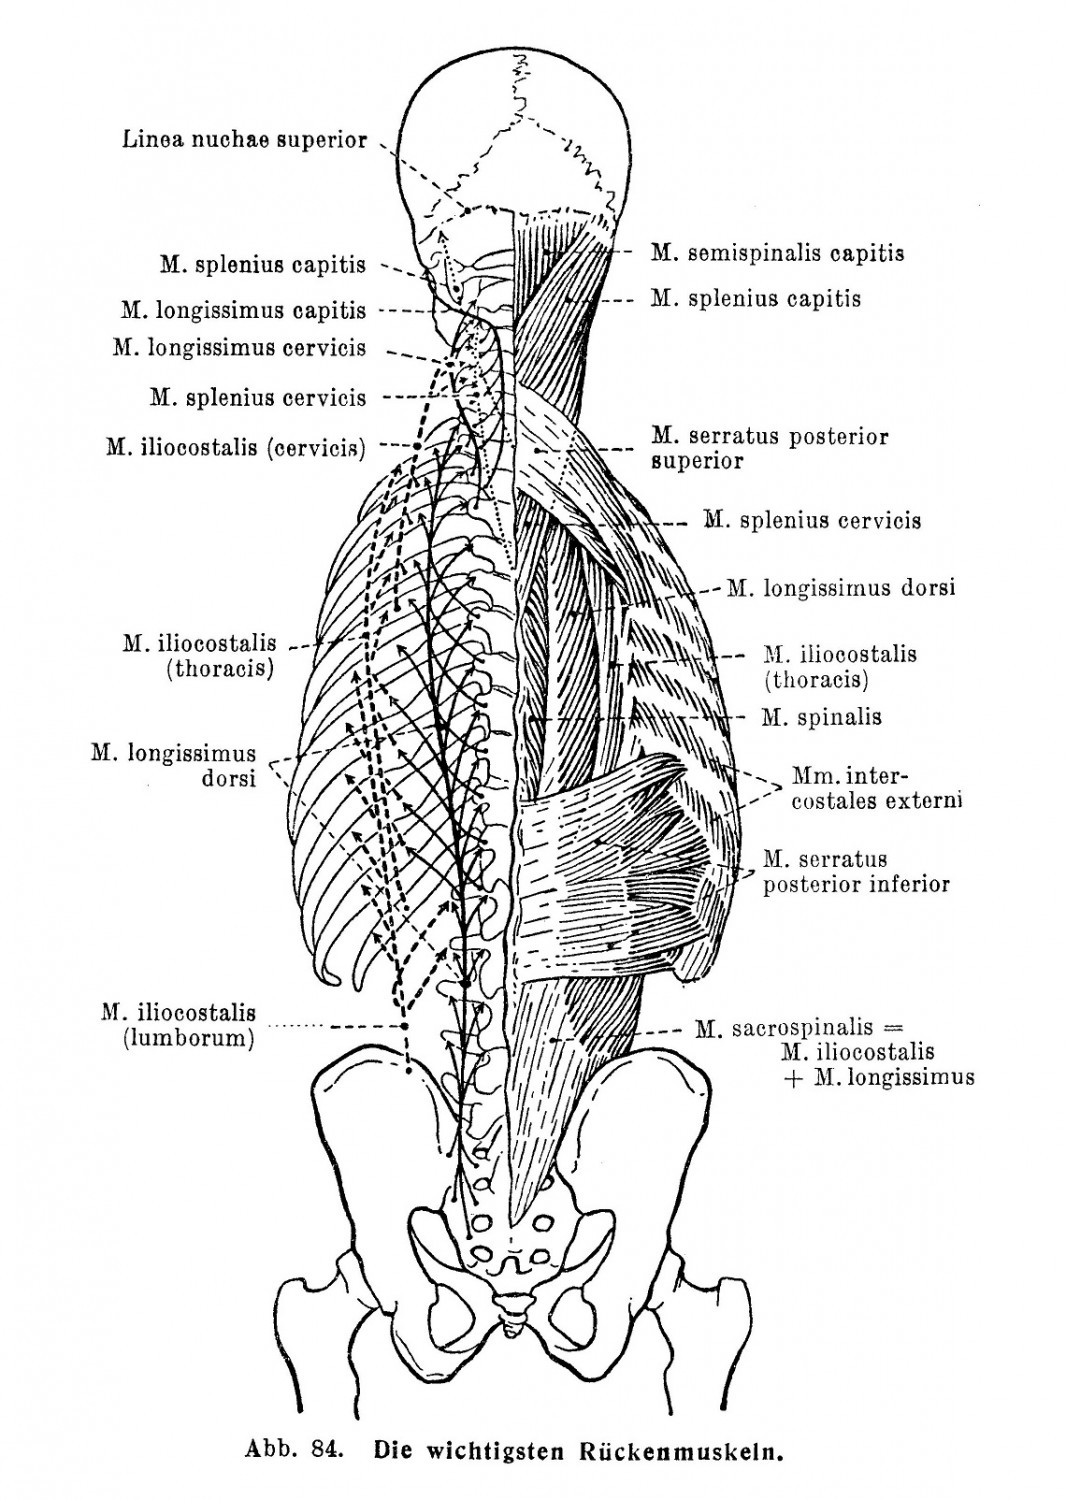 Die wichtigsten Rückenmuskeln